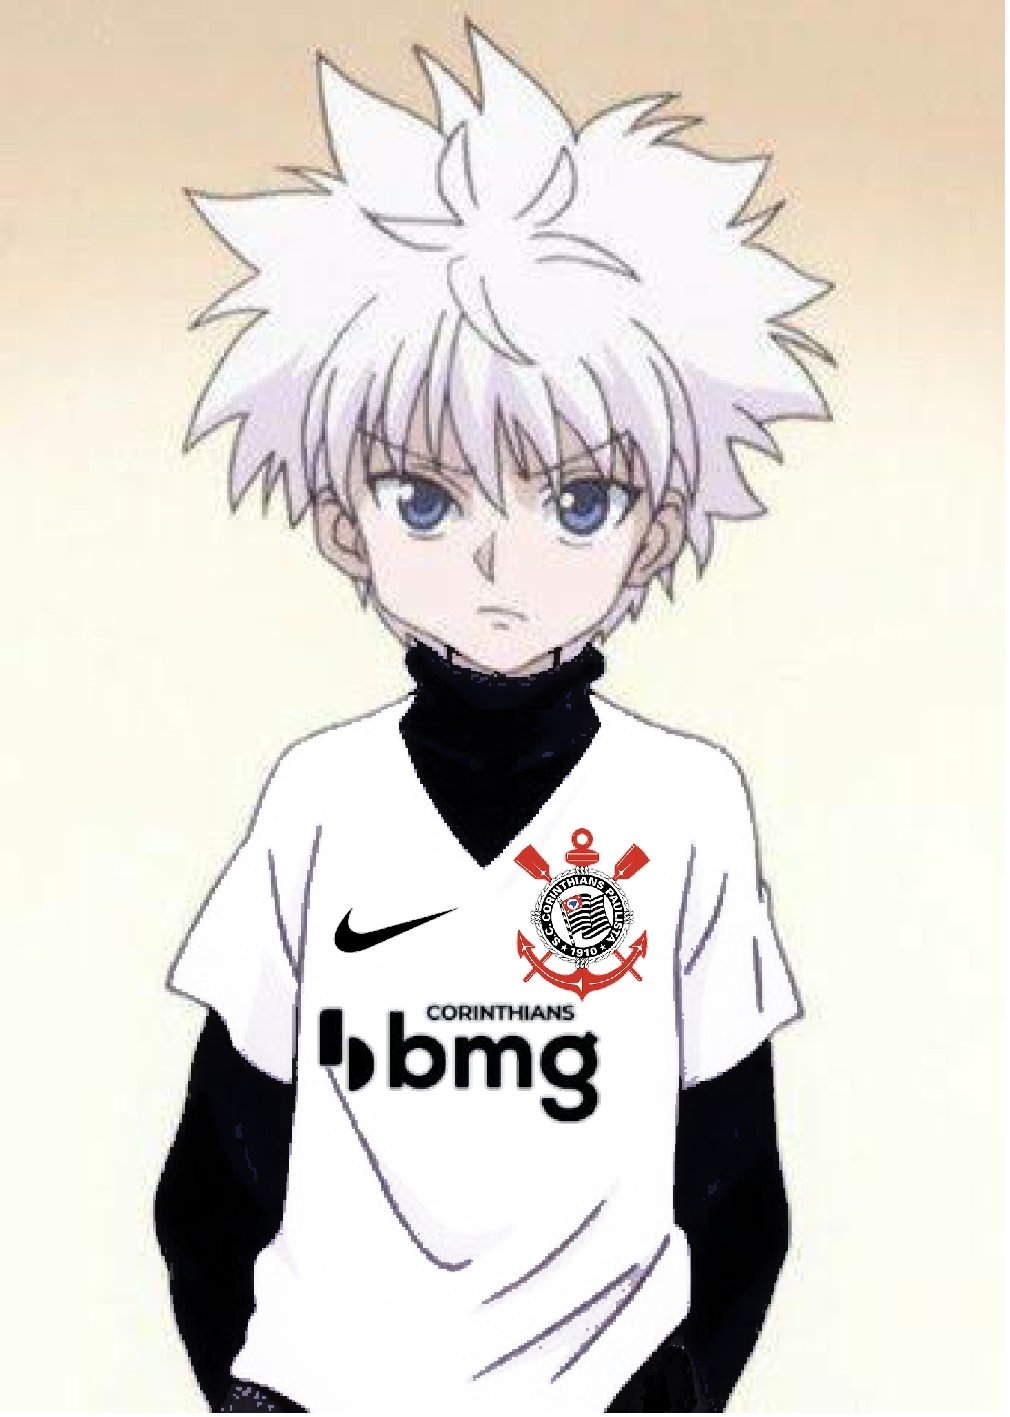 Alguém cria um subreddit pra personagens de anime com camisa de